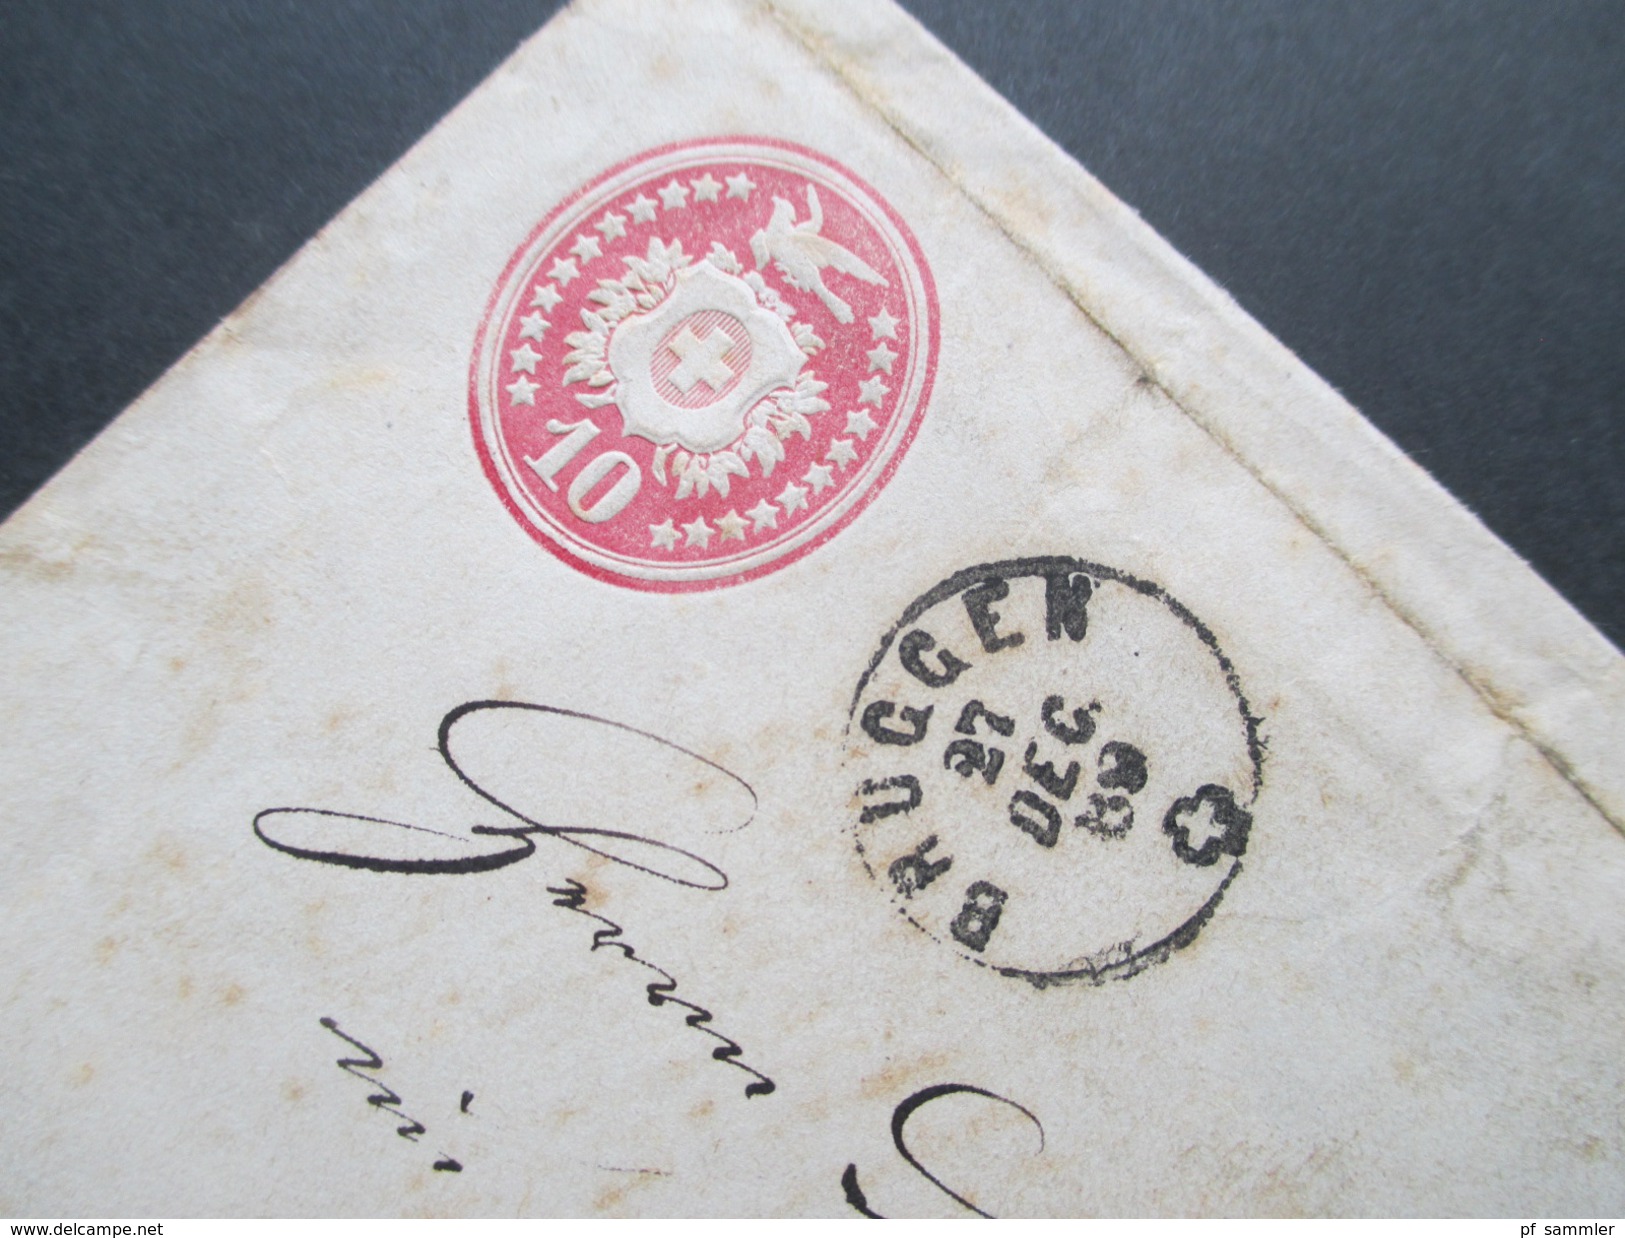 Schweiz 3 Ganzsachenumschläge Tübli / Brieftaube. 1869 alle echt gelaufen / gebraucht!